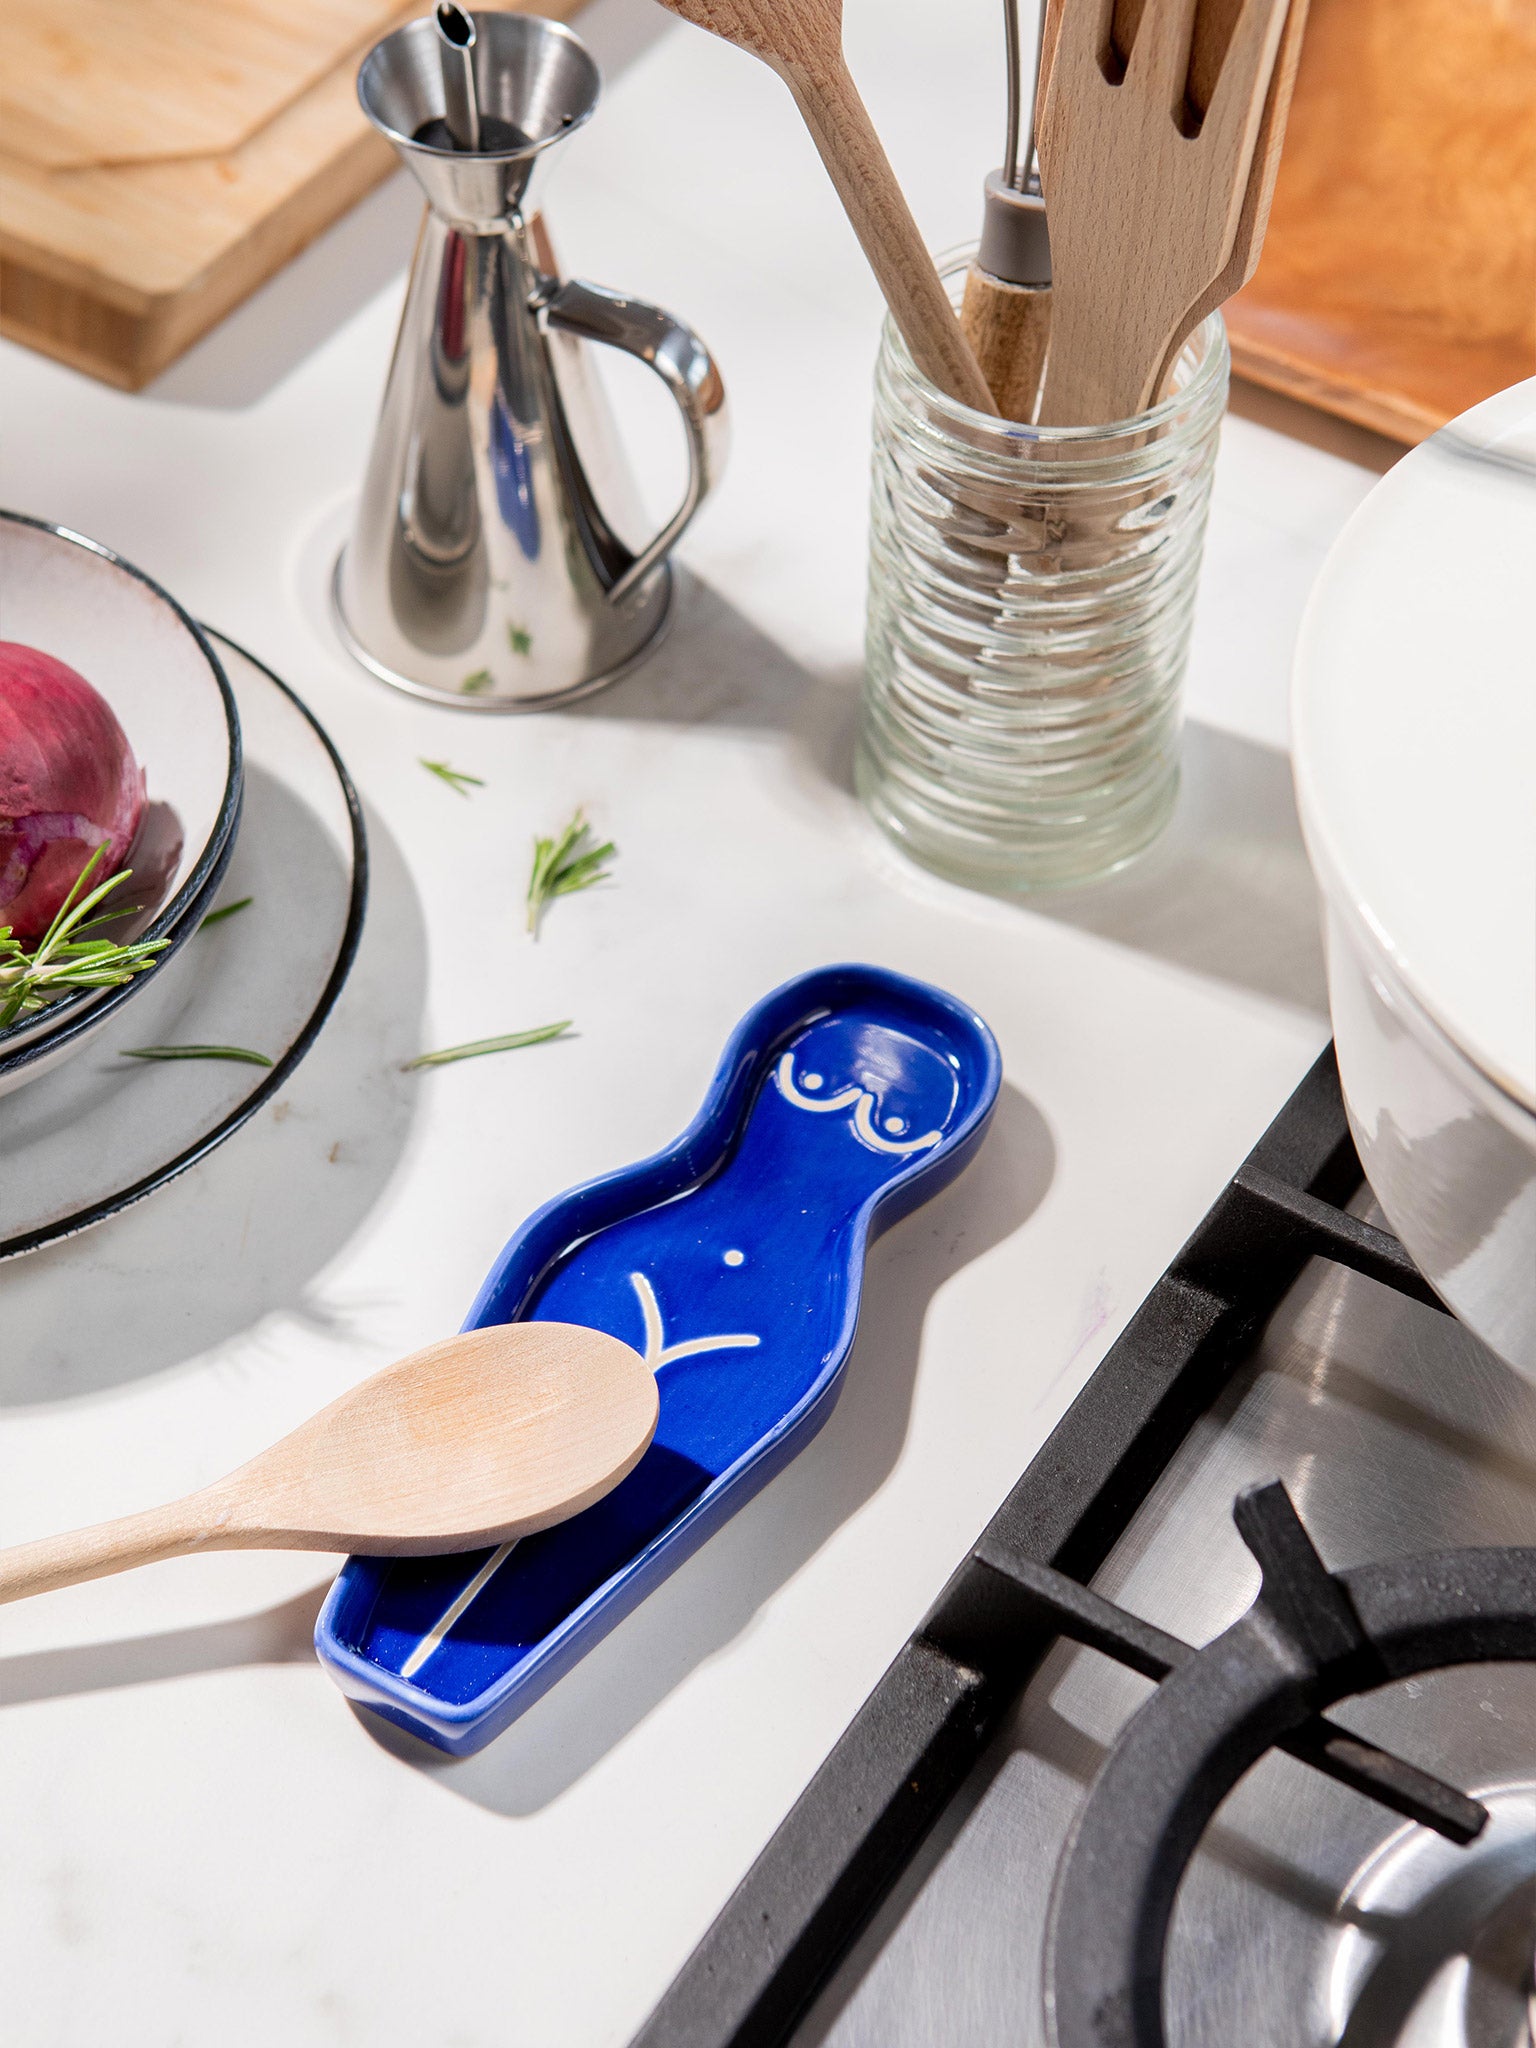 Keramická podložka na vařečku Body Spoon Rest od značky DOIY Design v modré barvě.